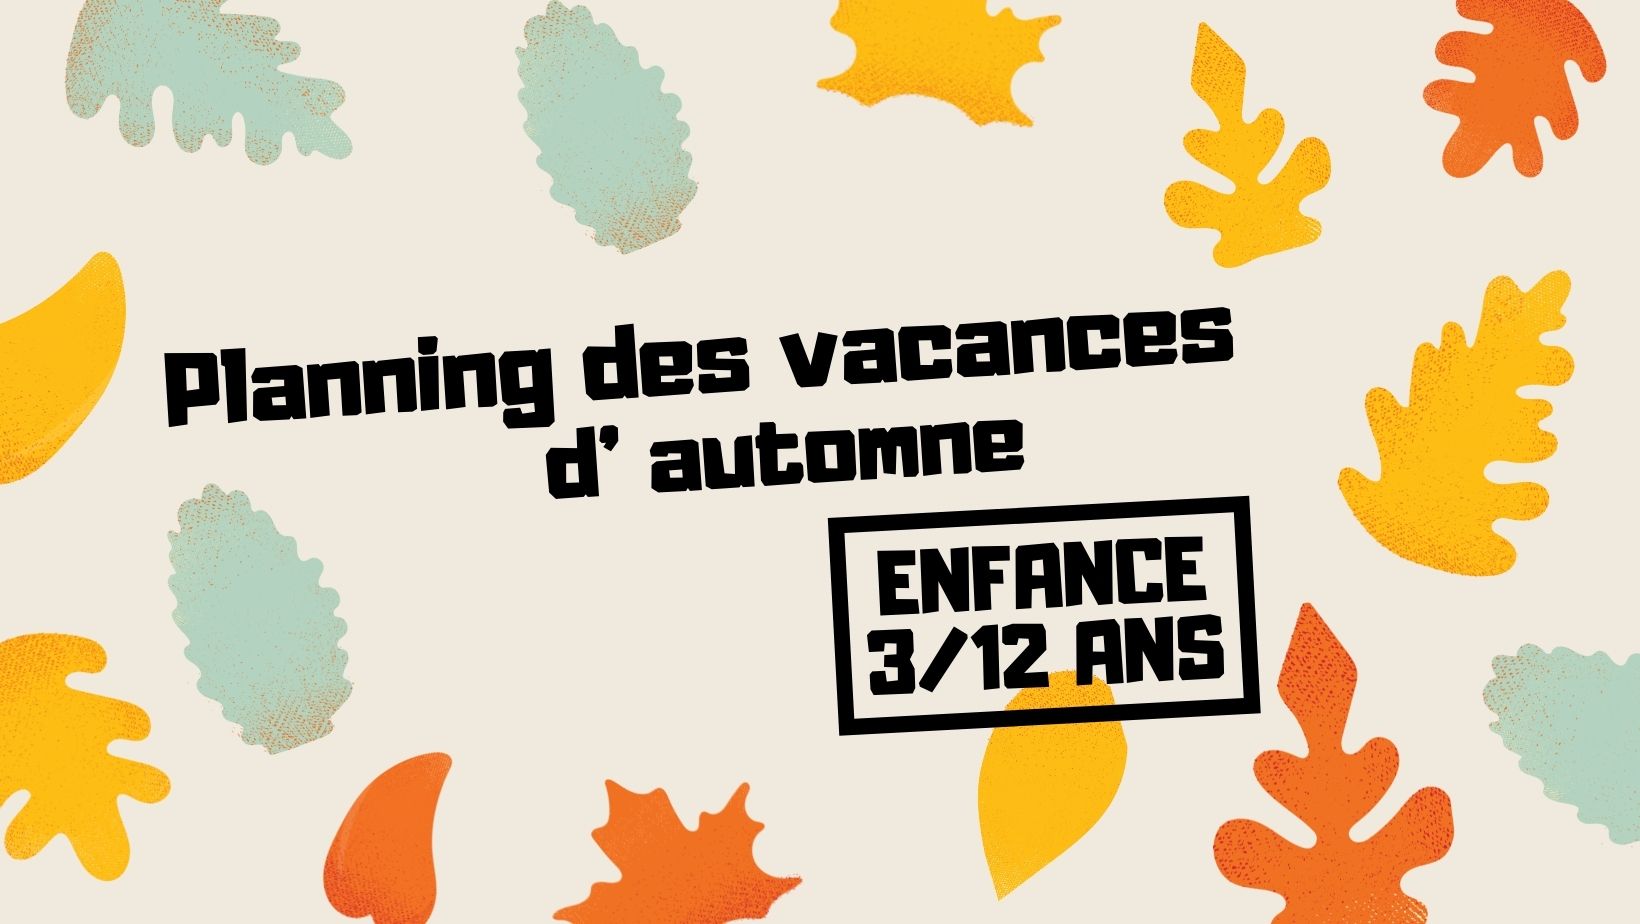 You are currently viewing Planning des vacances d’automne – Enfance (activités allant de 3 à 12 ans)